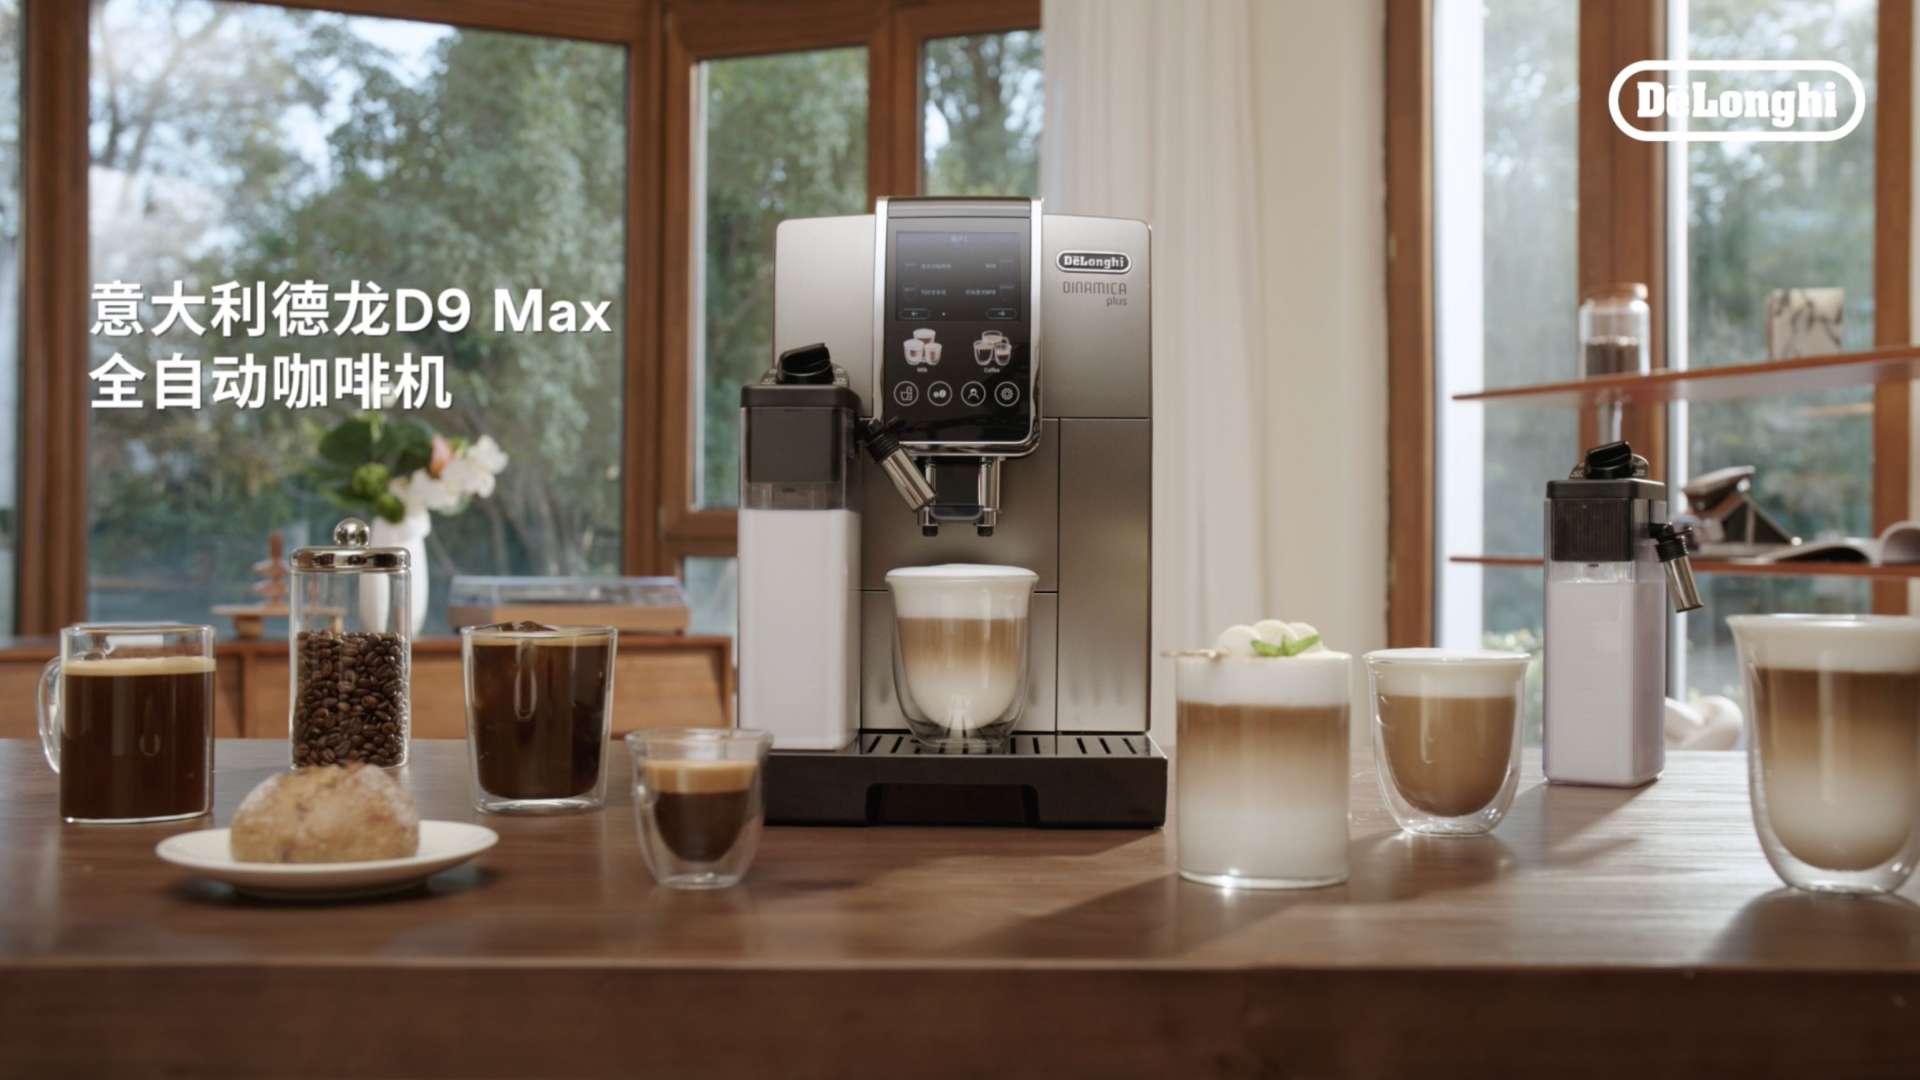 德龙D9 Max全自动咖啡机